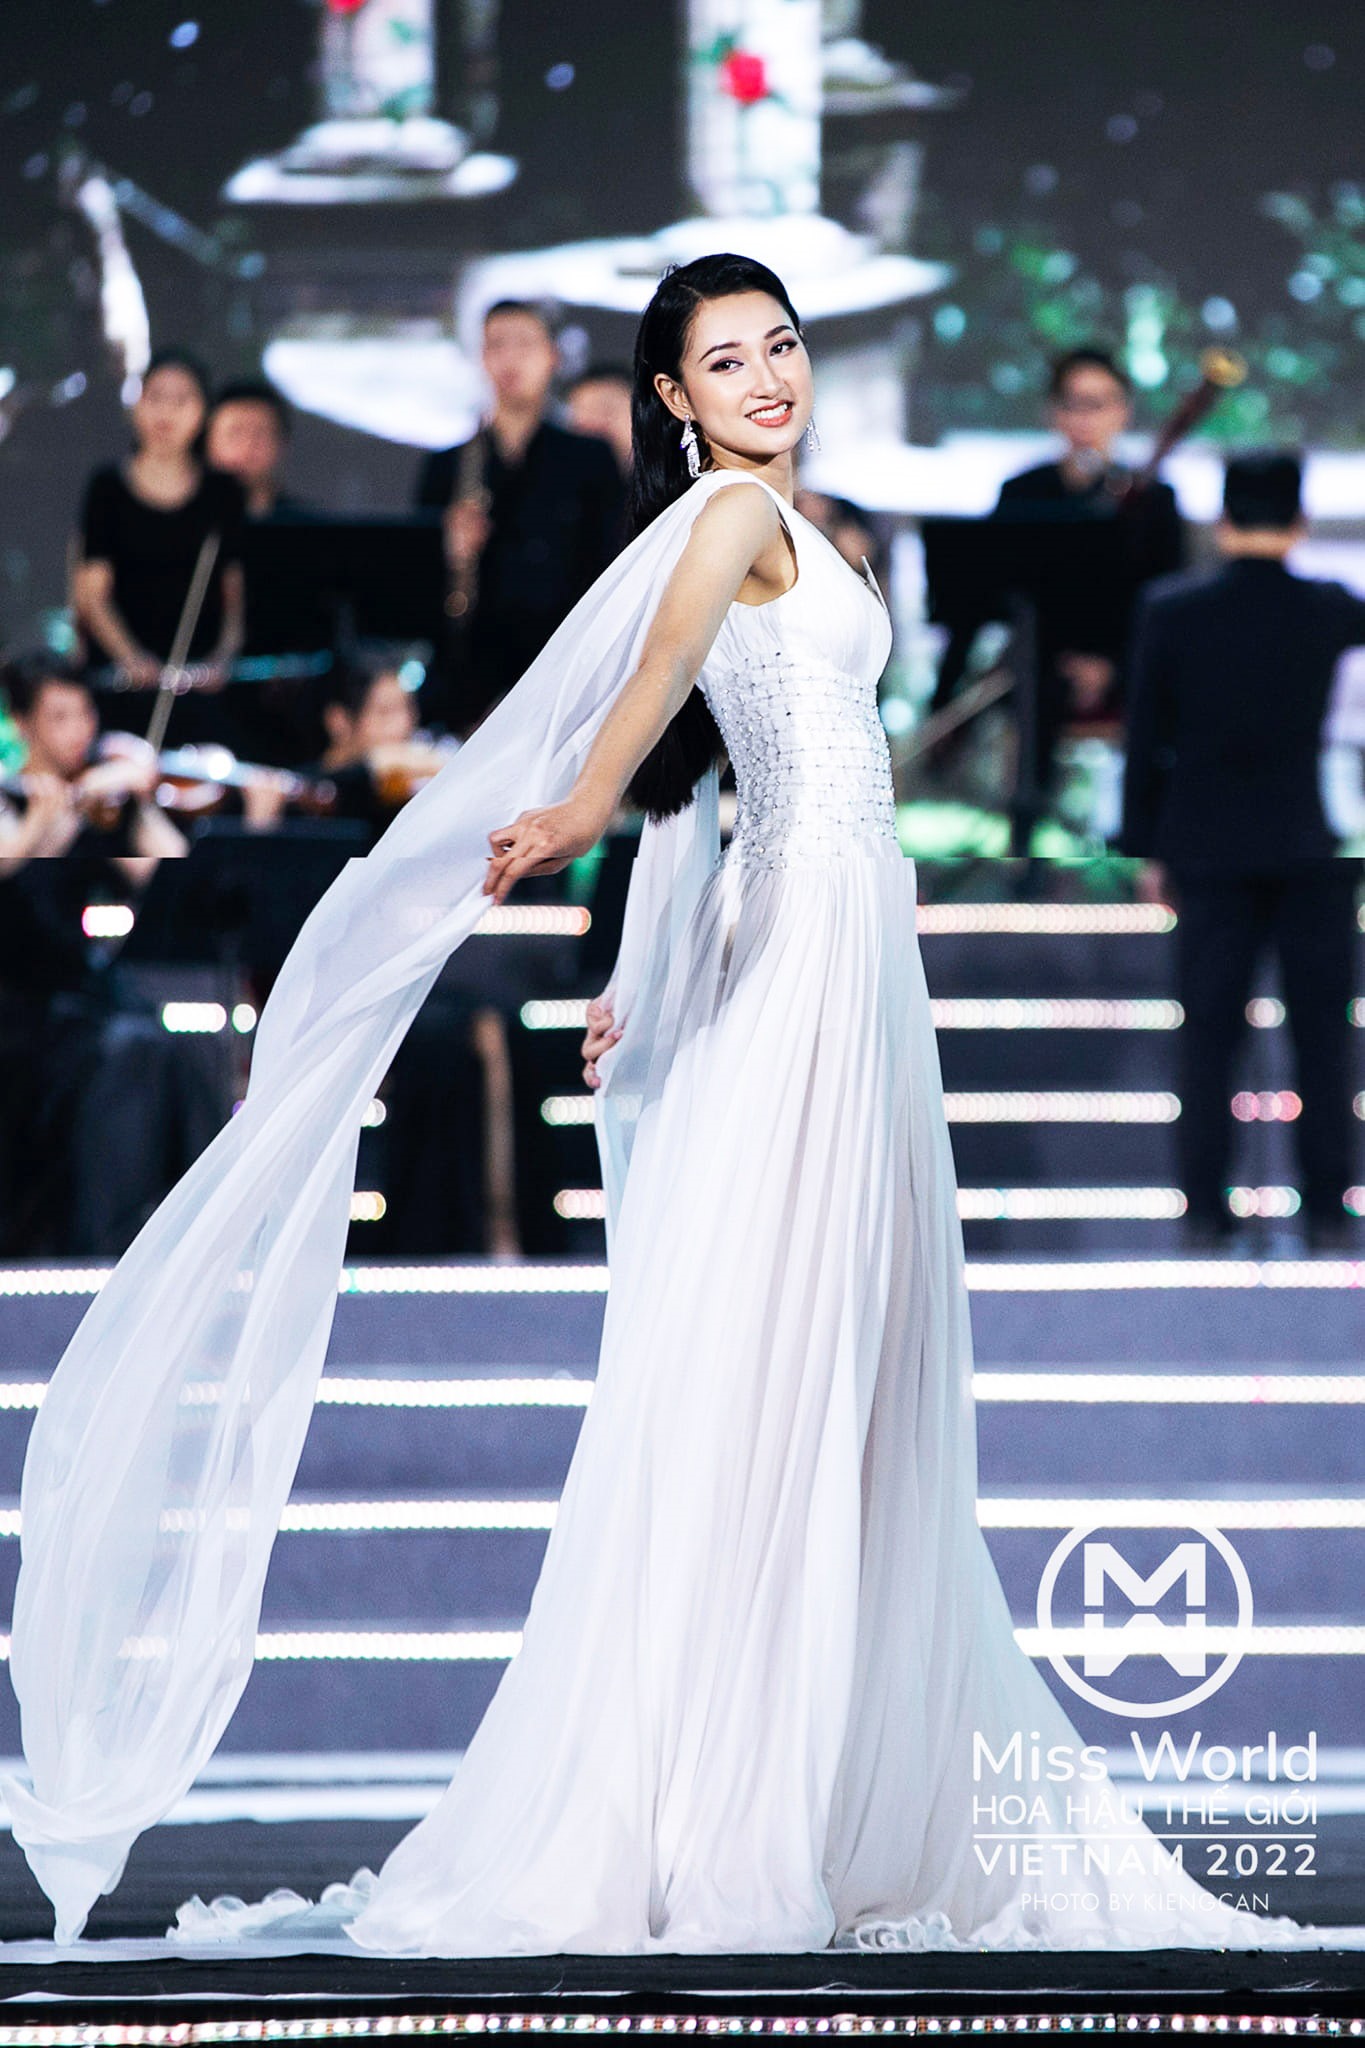 Nguyễn Thị Phương Linh vinh dự vào top 5 Hoa hậu Thế giới Việt Nam 2022 - Ảnh: MWVN